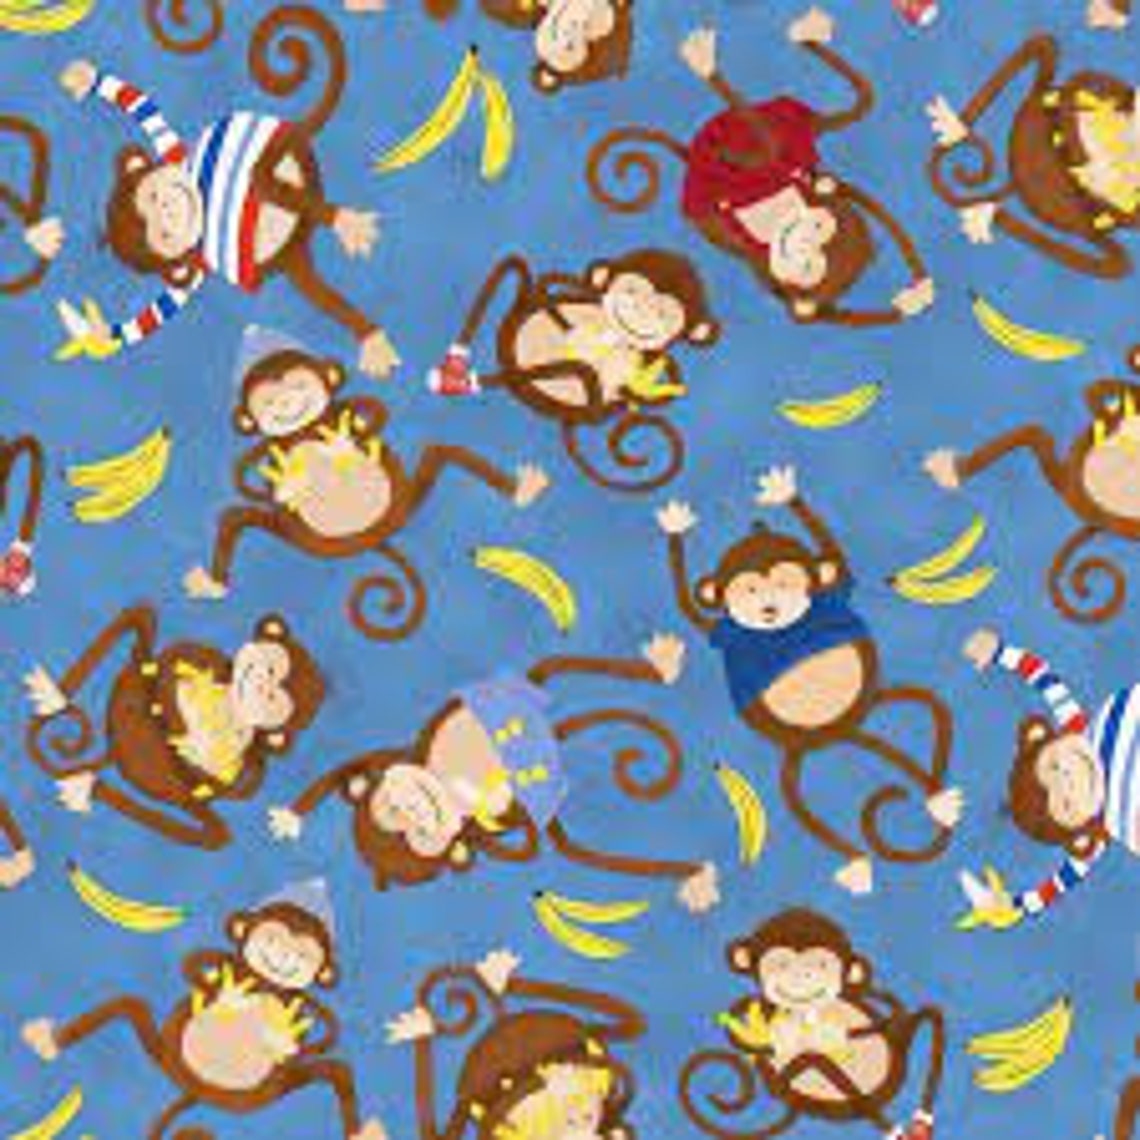 Monkey fabric Blue Monkey Monkey Business fabric Henry | Etsy